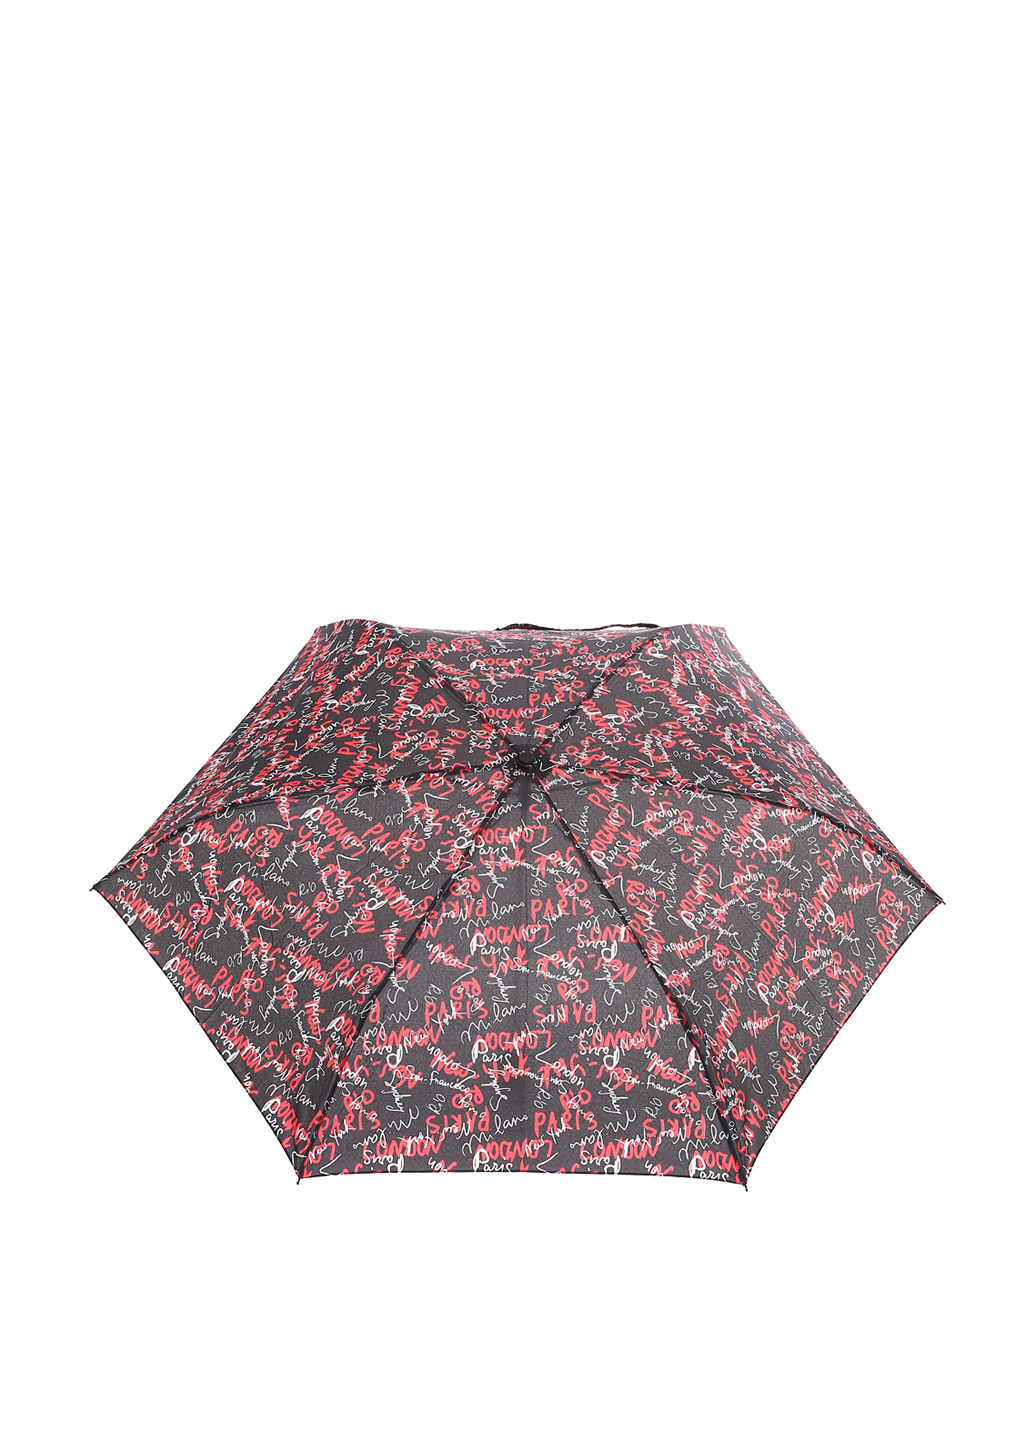 Мини-зонт механический Ferre Milano Черный с красным (597)